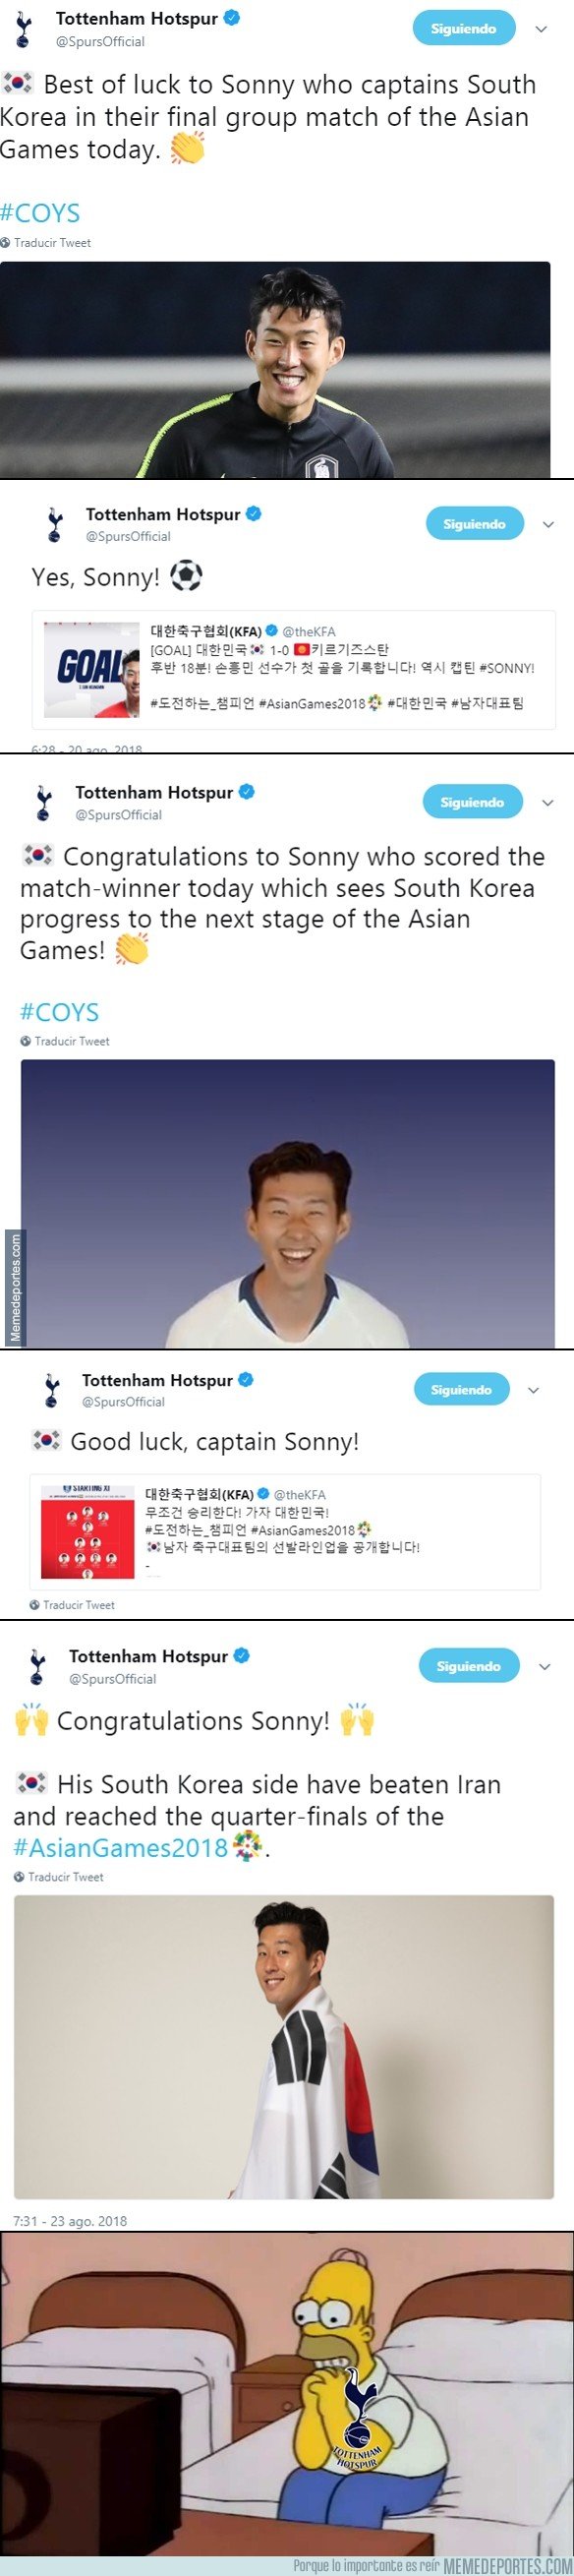 1048426 - El Tottenham no ha dejado solo a Son Heung Min ni un minuto